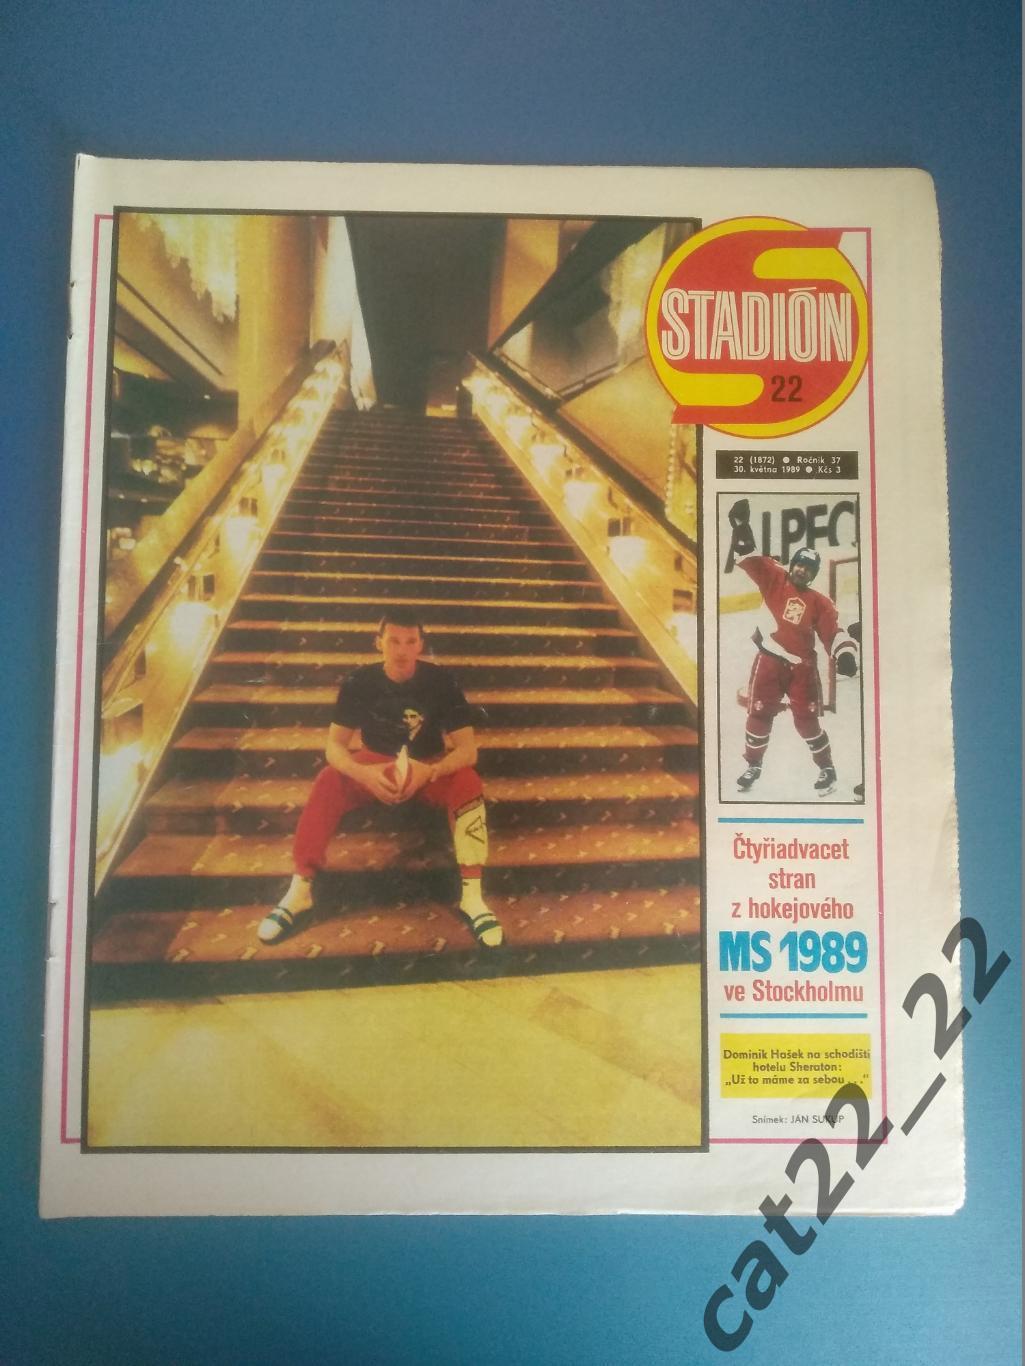 Журнал Стадион/Stadion. Полный номер. Хоккей. СССР 22 1989